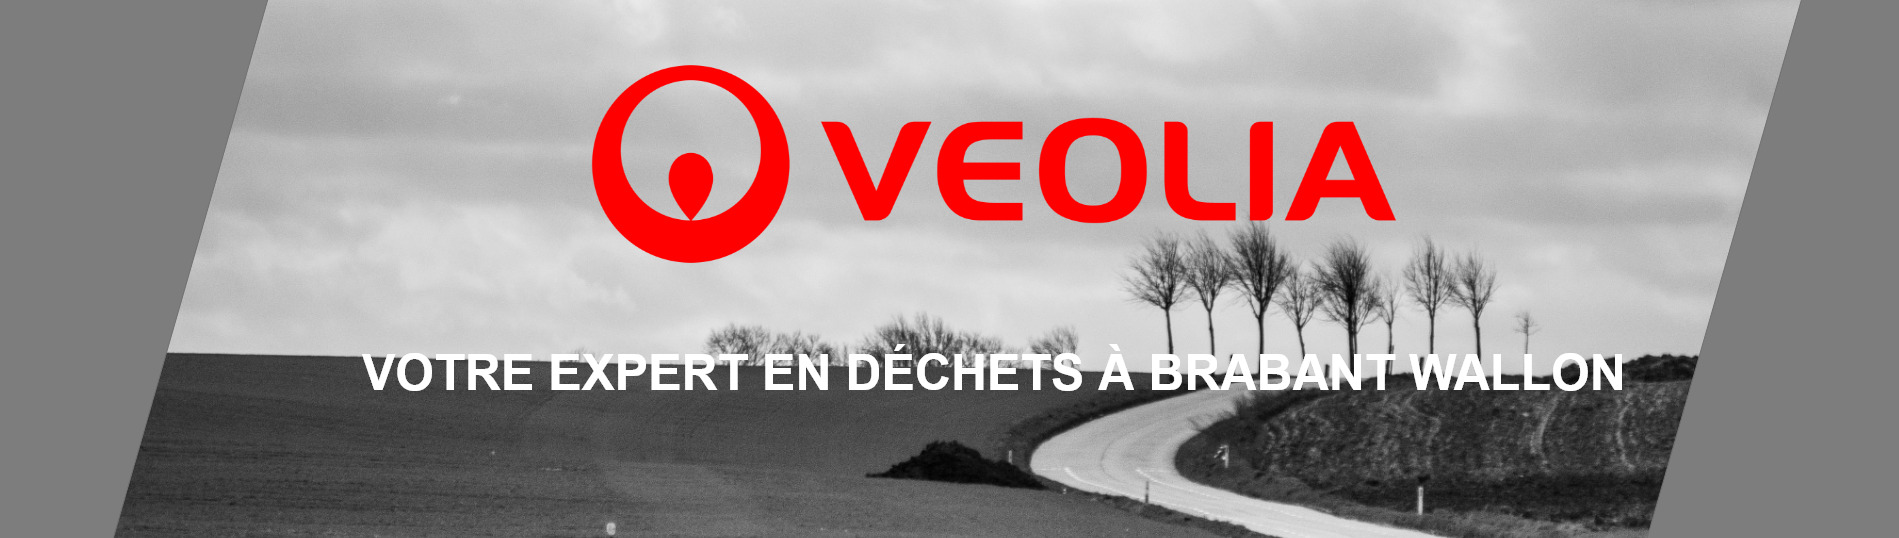 Bannière - Un conteneur pour vos déchets au Brabant Wallon| Veolia Belgique